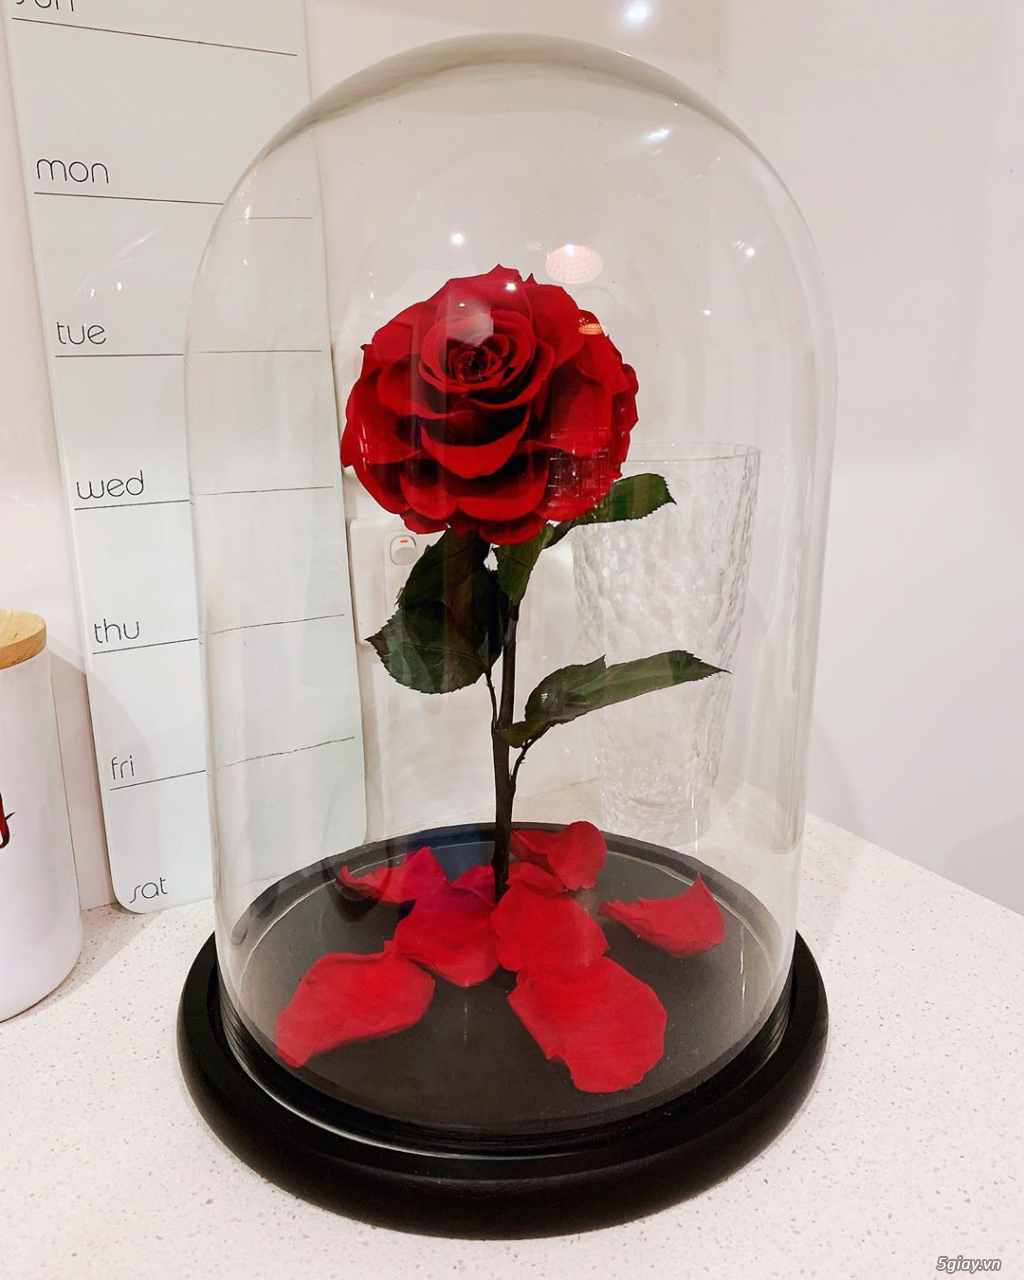 HCM - Hoa hồng vĩnh cữu đặt trong lọ kính cực kỳ sang trọng - 3